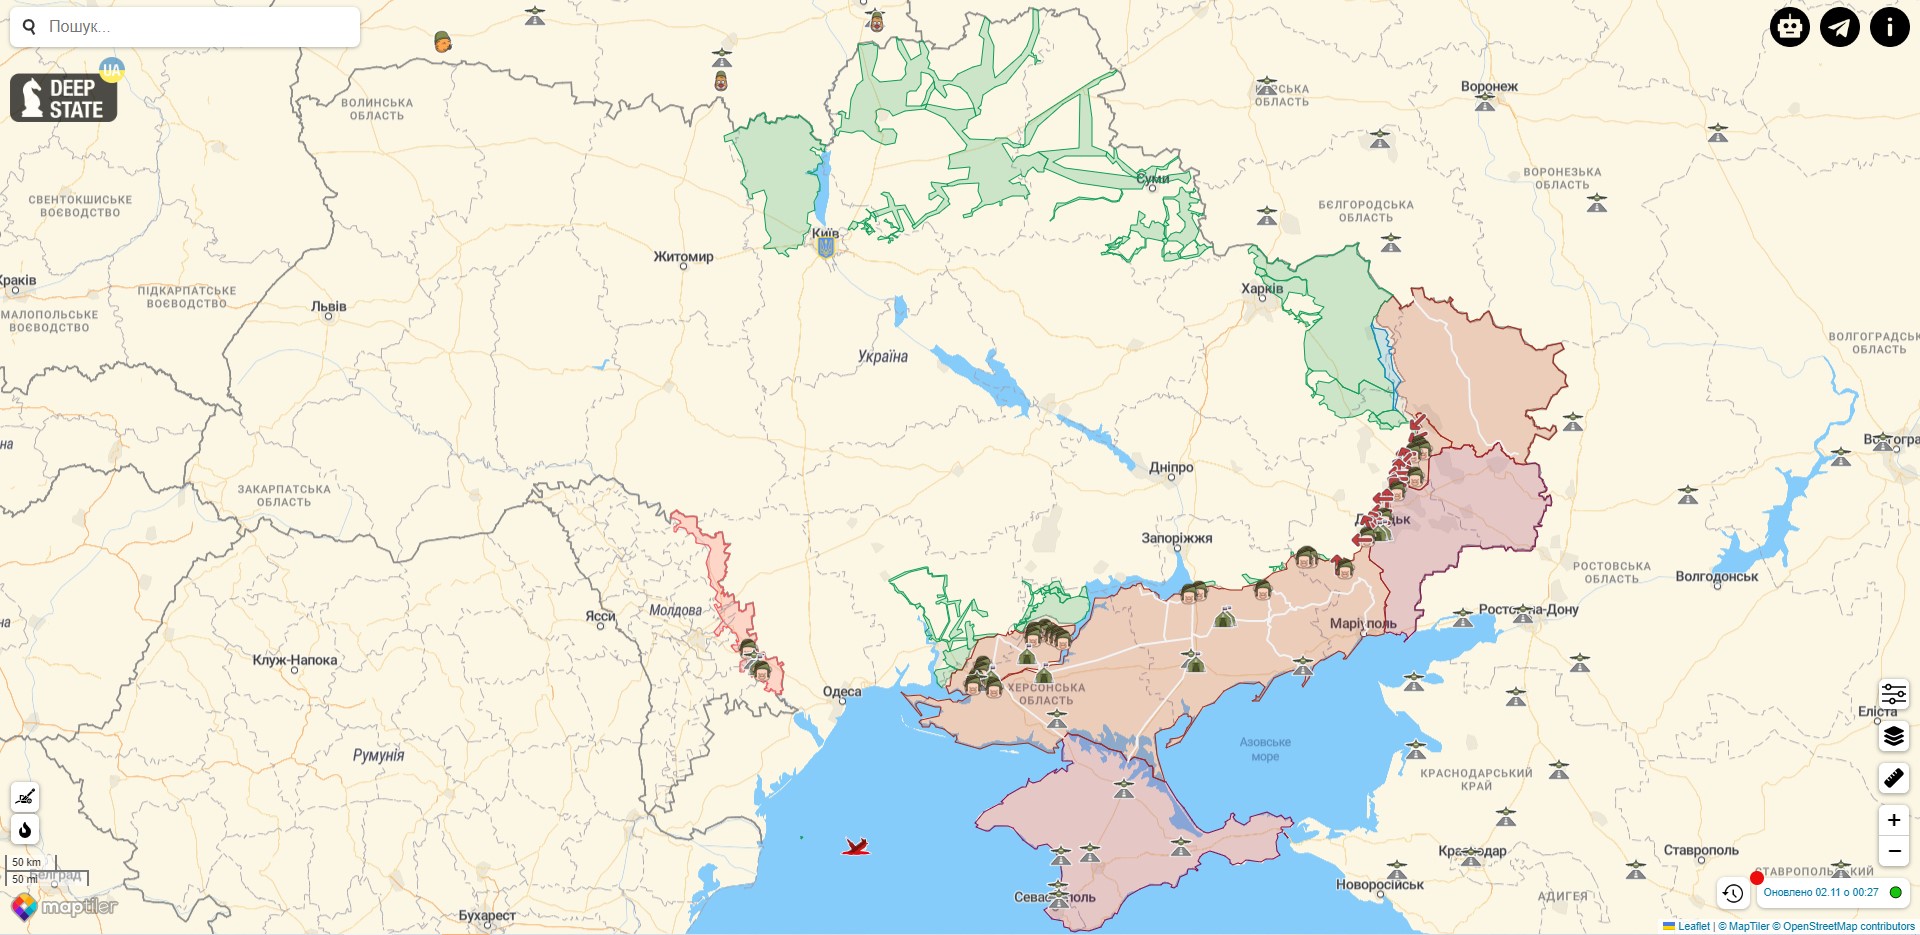 Боевые действия против РФ на территории Украины на 2 ноября